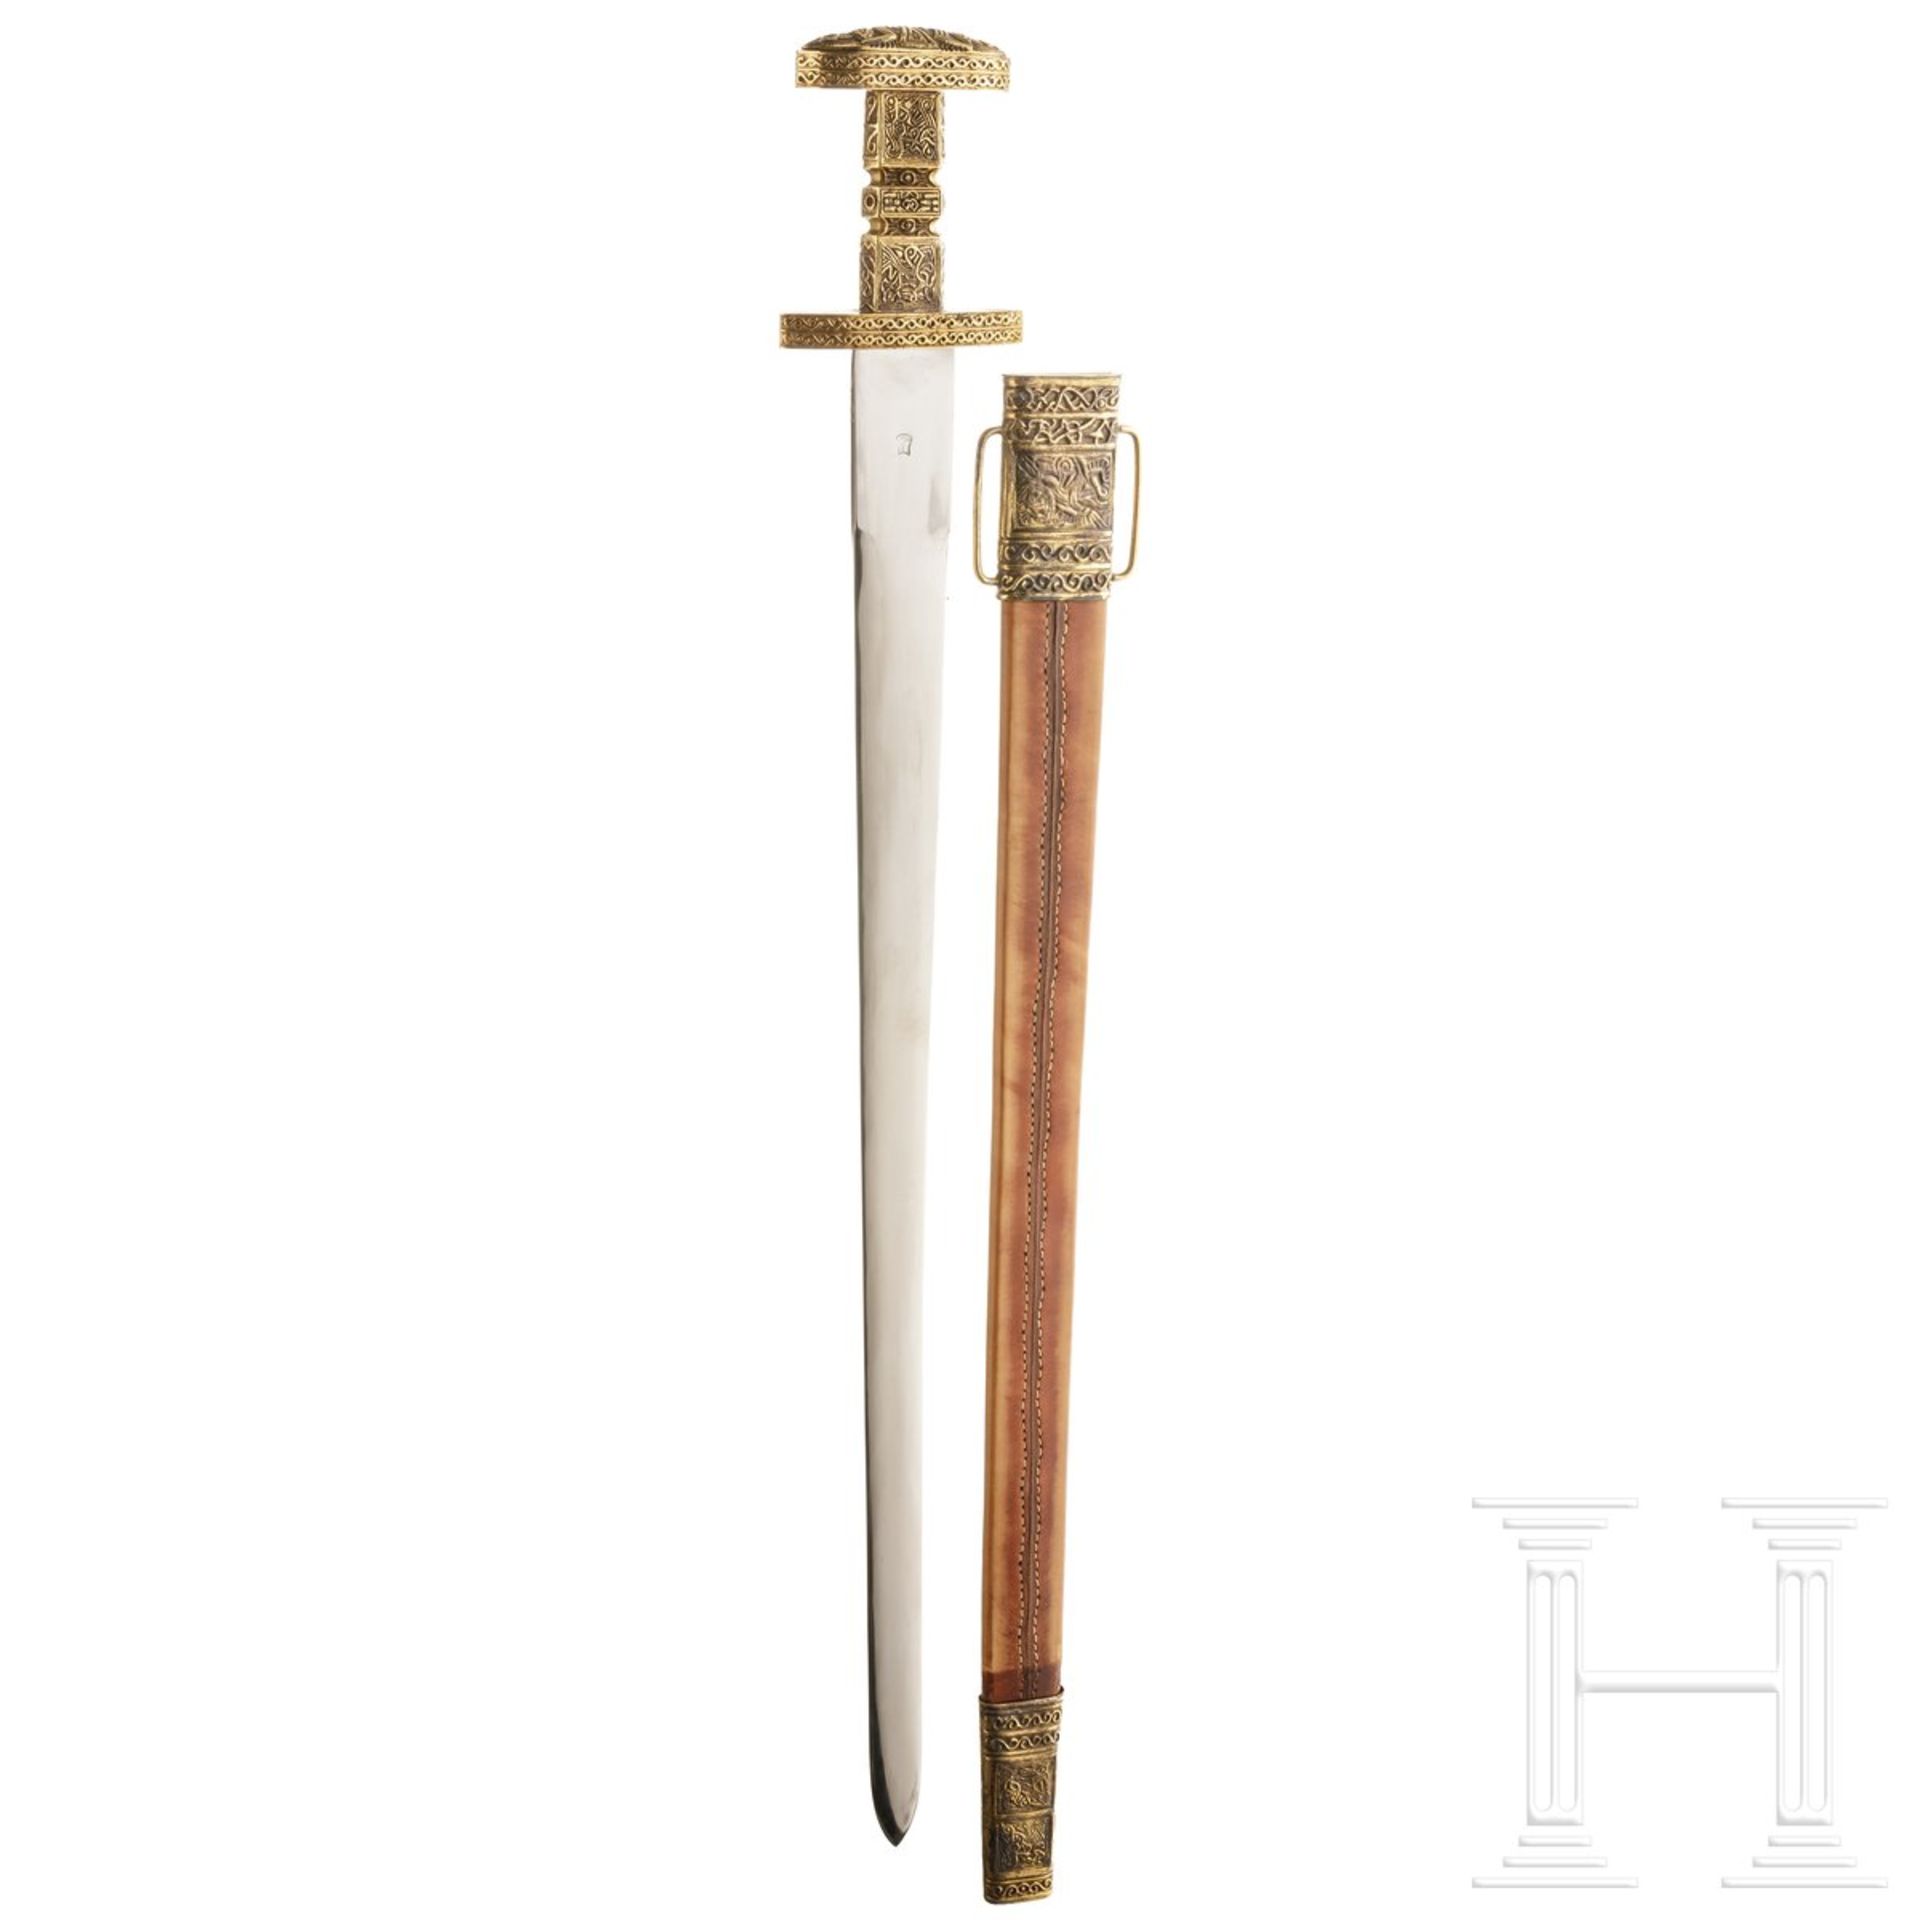 Ägyptischer Dolch und Wikinger-Schwert, moderne Sammleranfertigung - Bild 2 aus 3